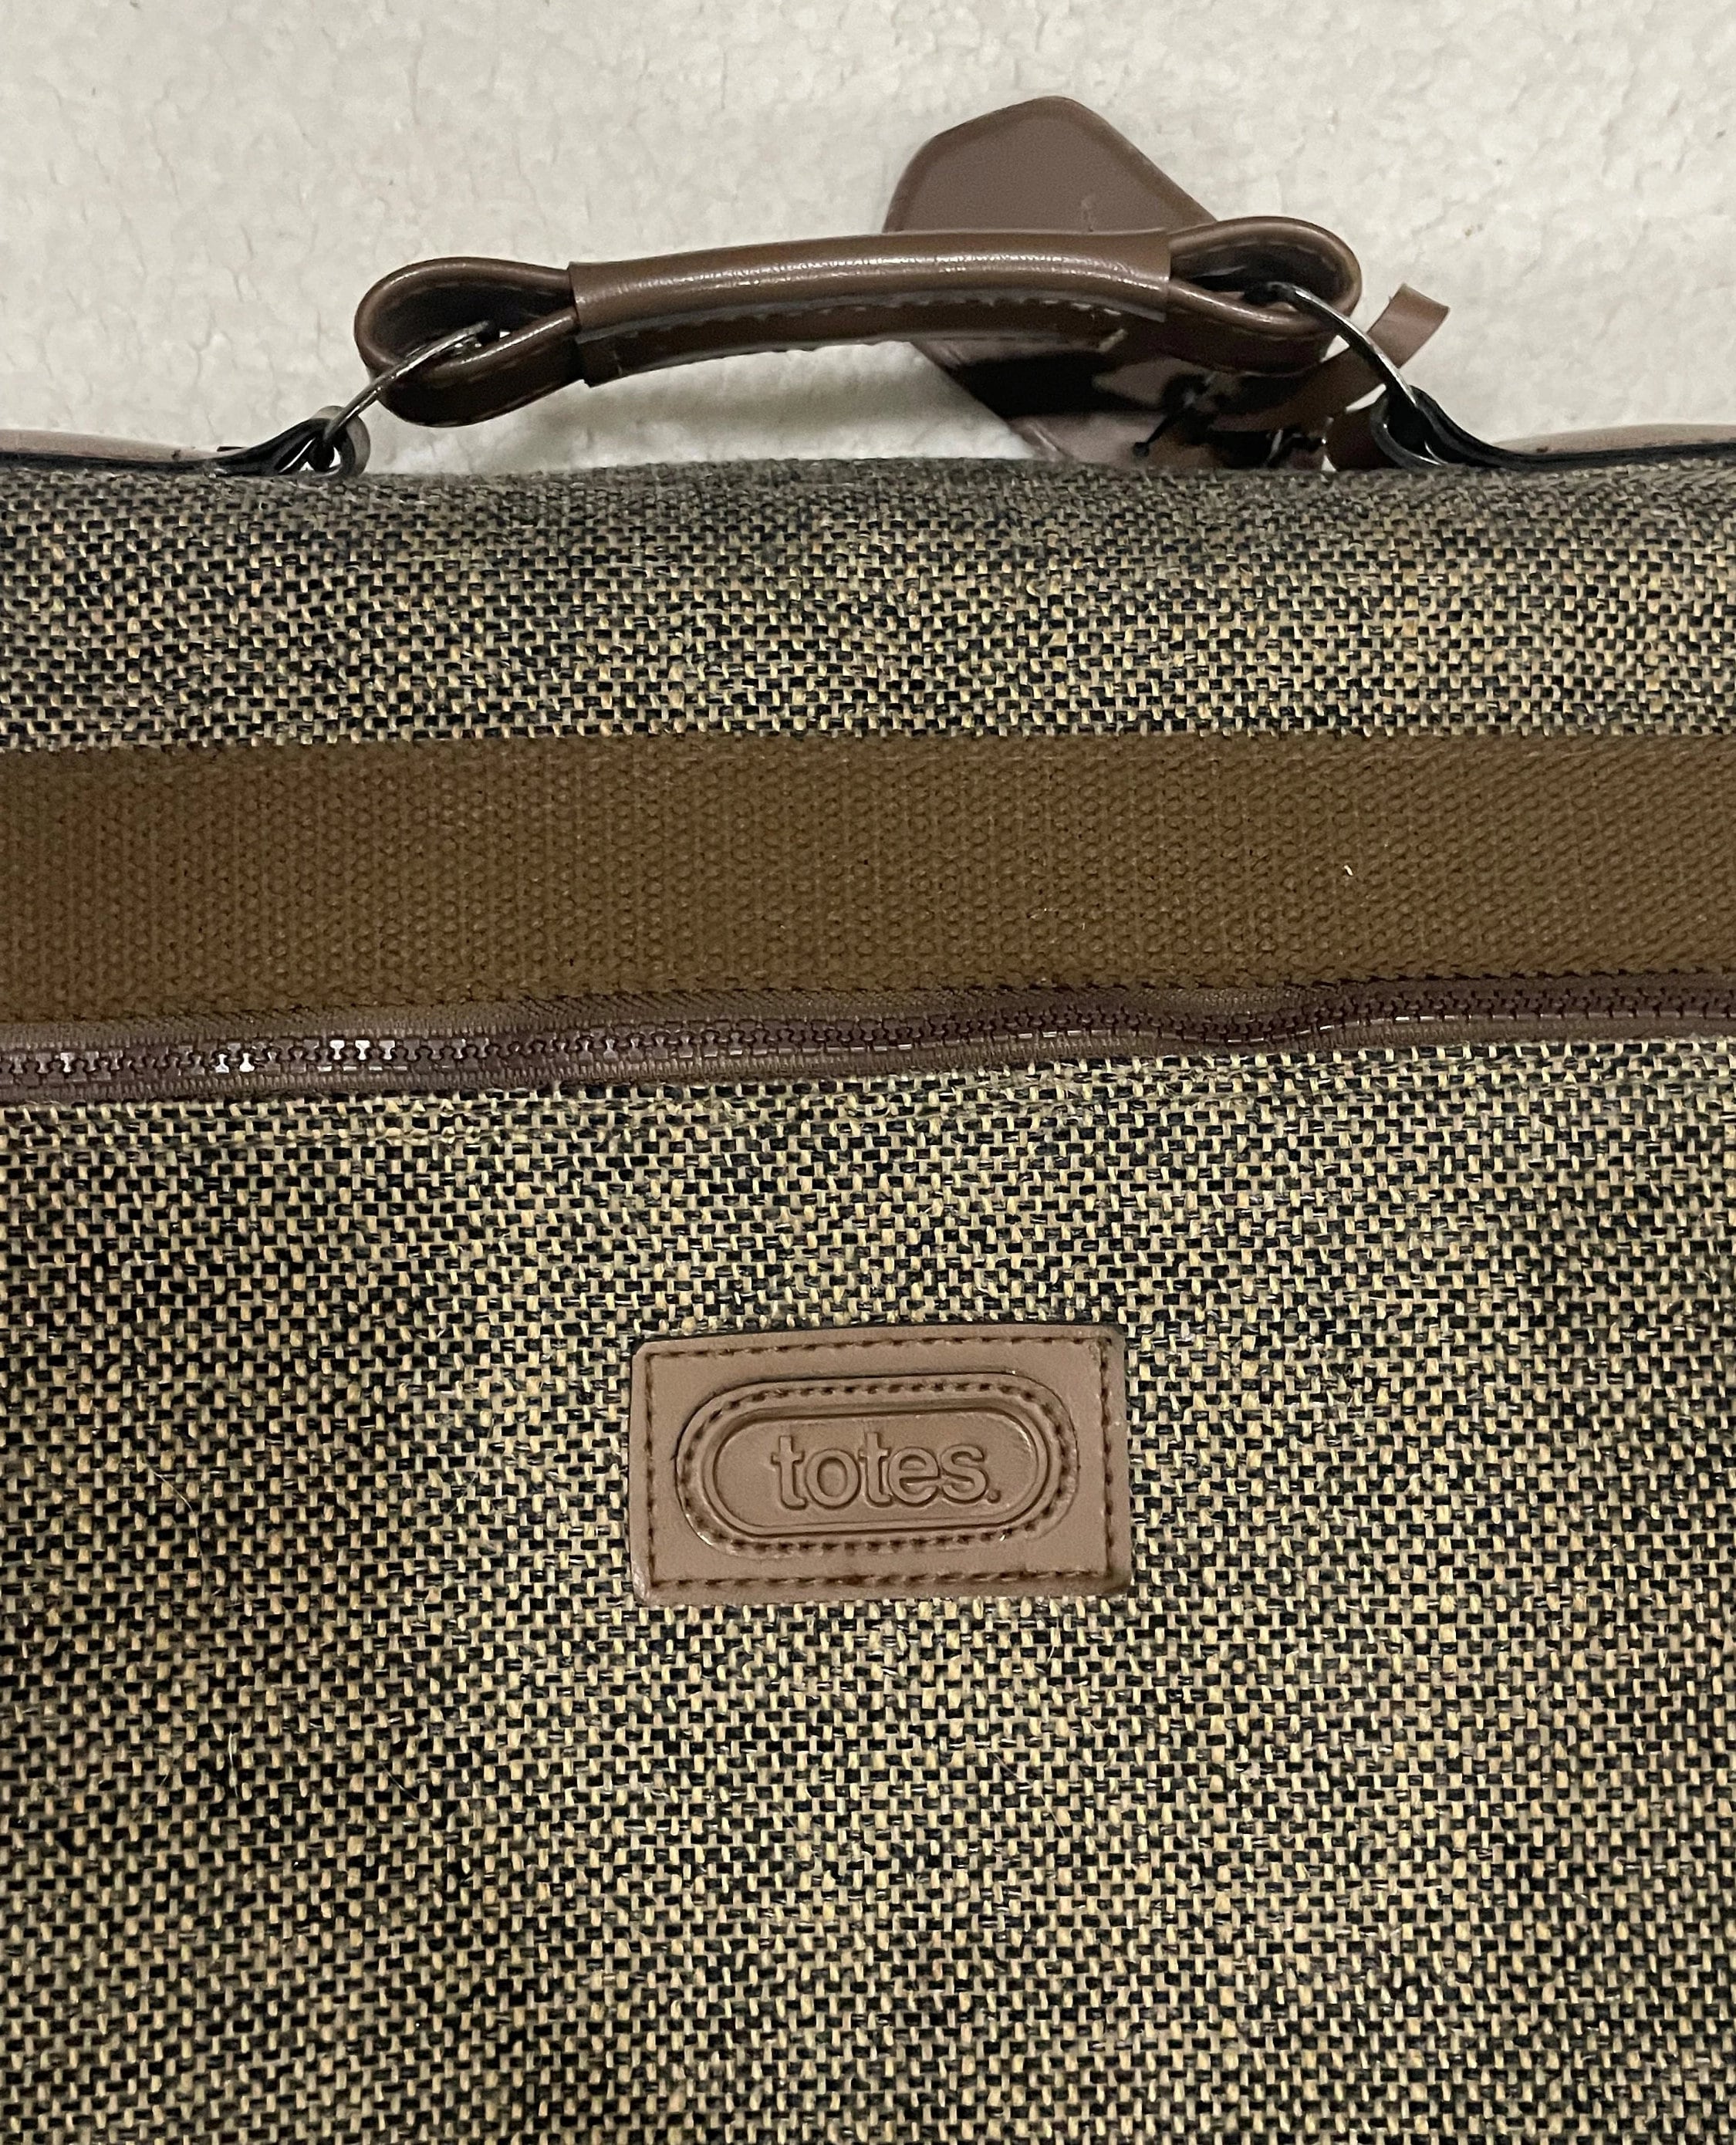 Lot - Vintage Louis Vuitton Travel Garment Bag